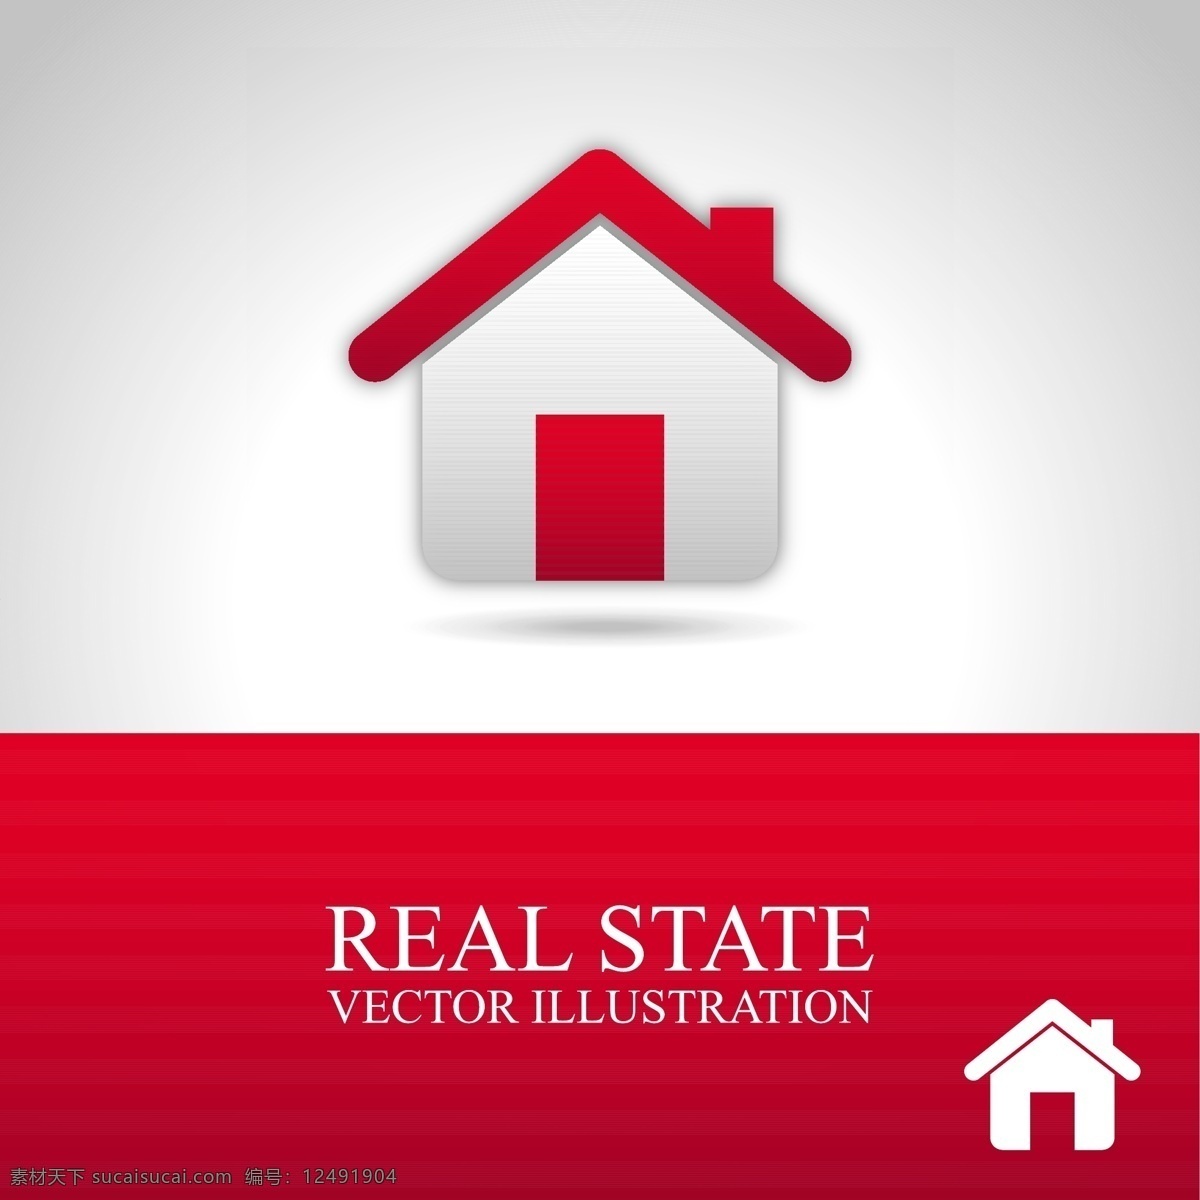 红色 房地产 标志 模板下载 红色房子 房地产标志 房子 建筑 高楼大厦 图标 行业标志 标志图标 矢量素材 房产广告 白色